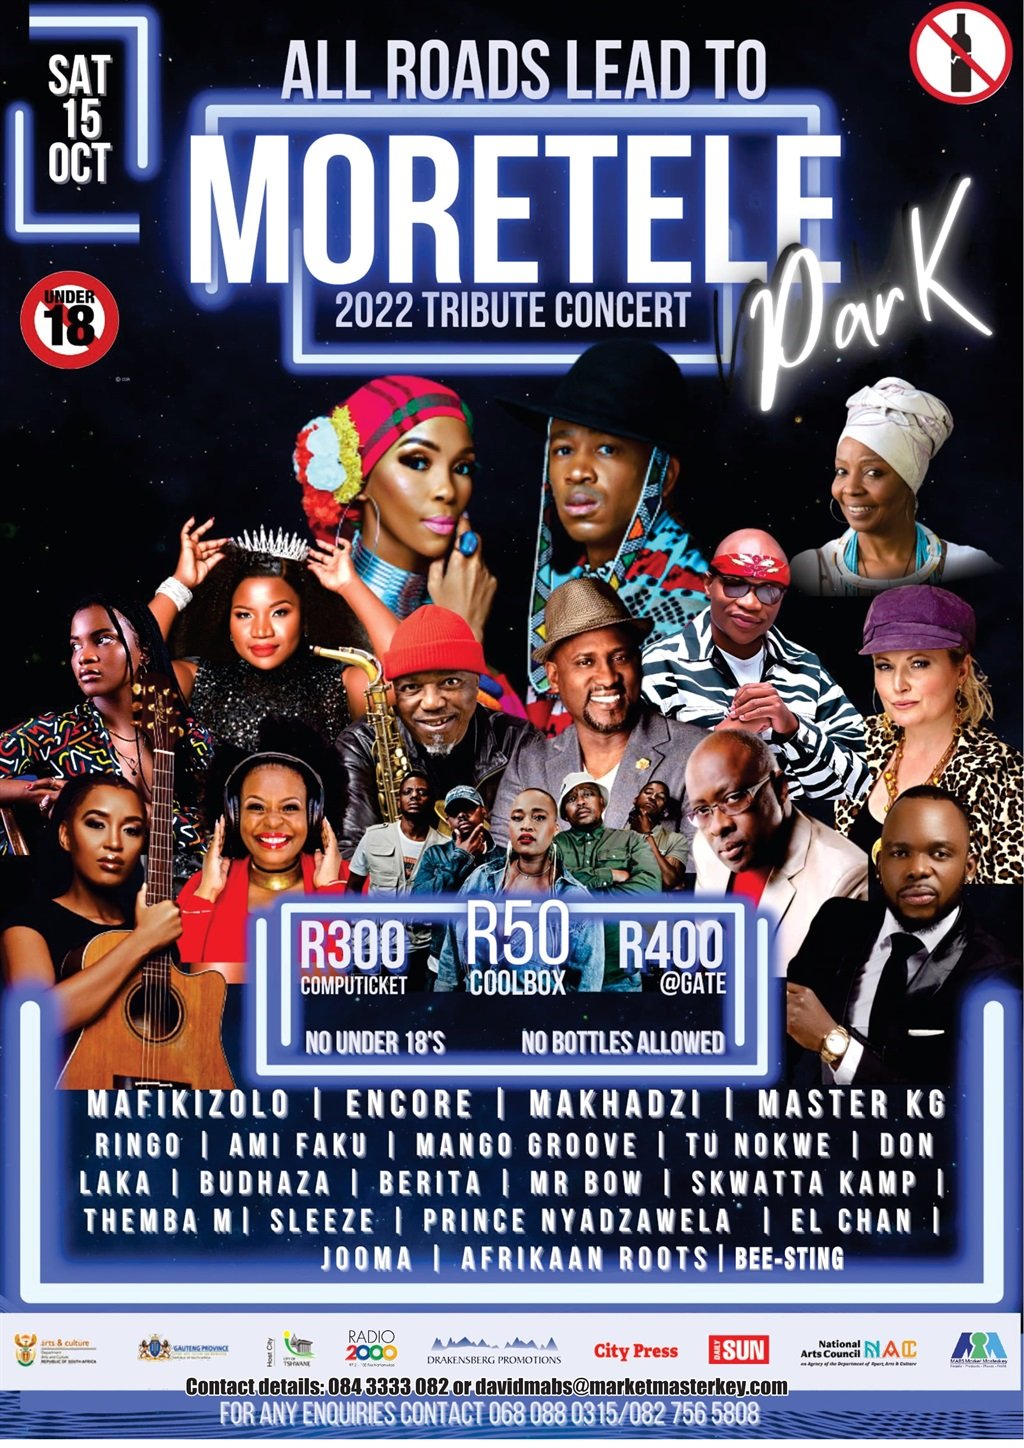 Moretele Park Tribute Concert this Saturday in Mamelodi.